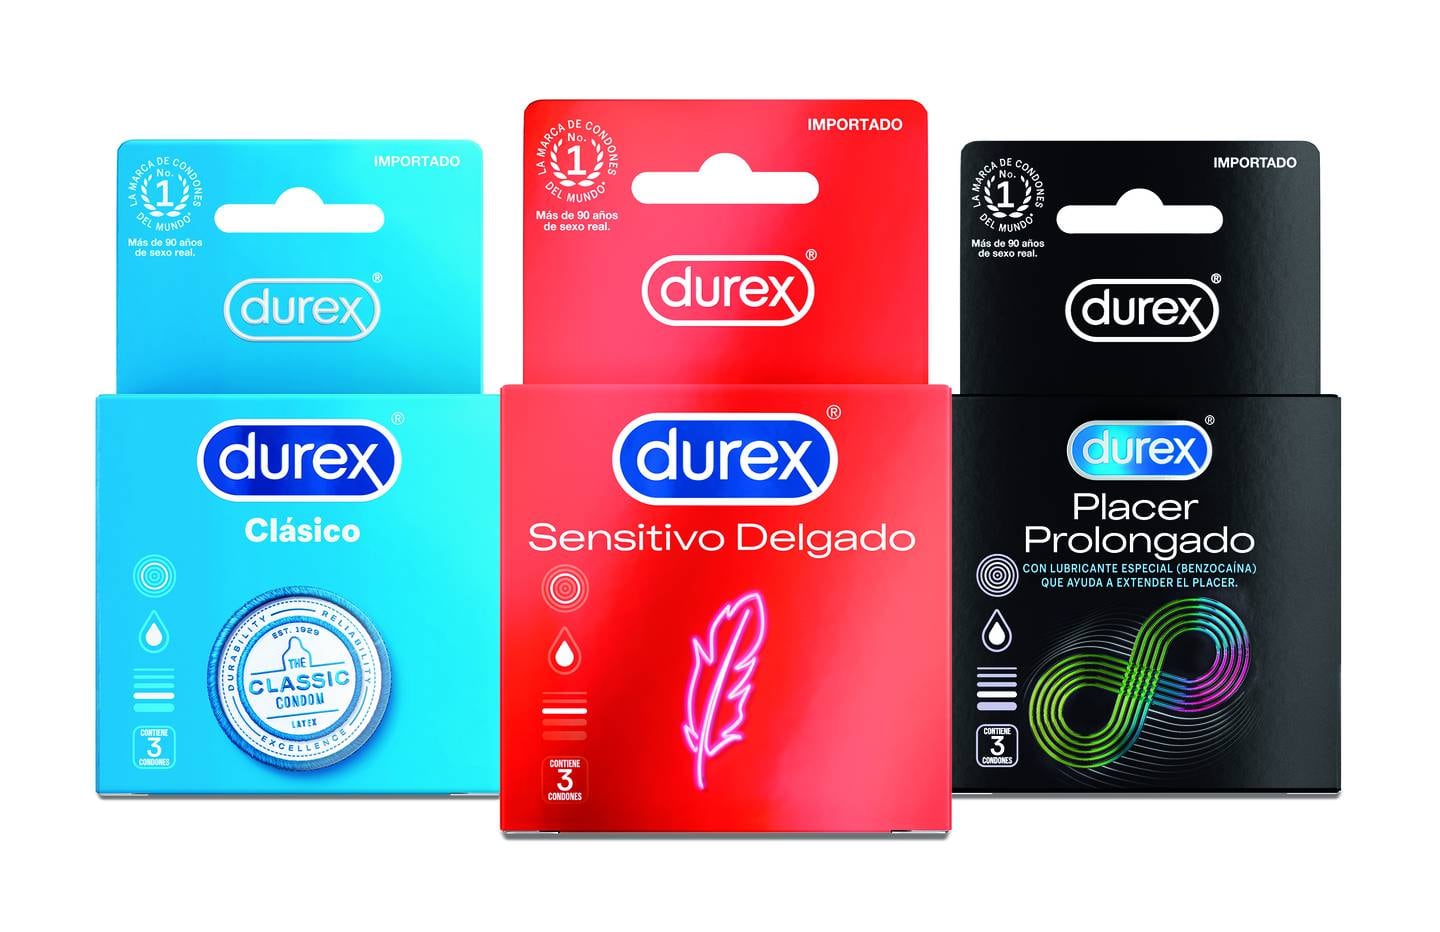 El13 de febrero se celebra el Día Internacional del Condón. En Costa Rica la marca Durex los que más vende son el clásico, el sensitivo delgado y el placer prolongado